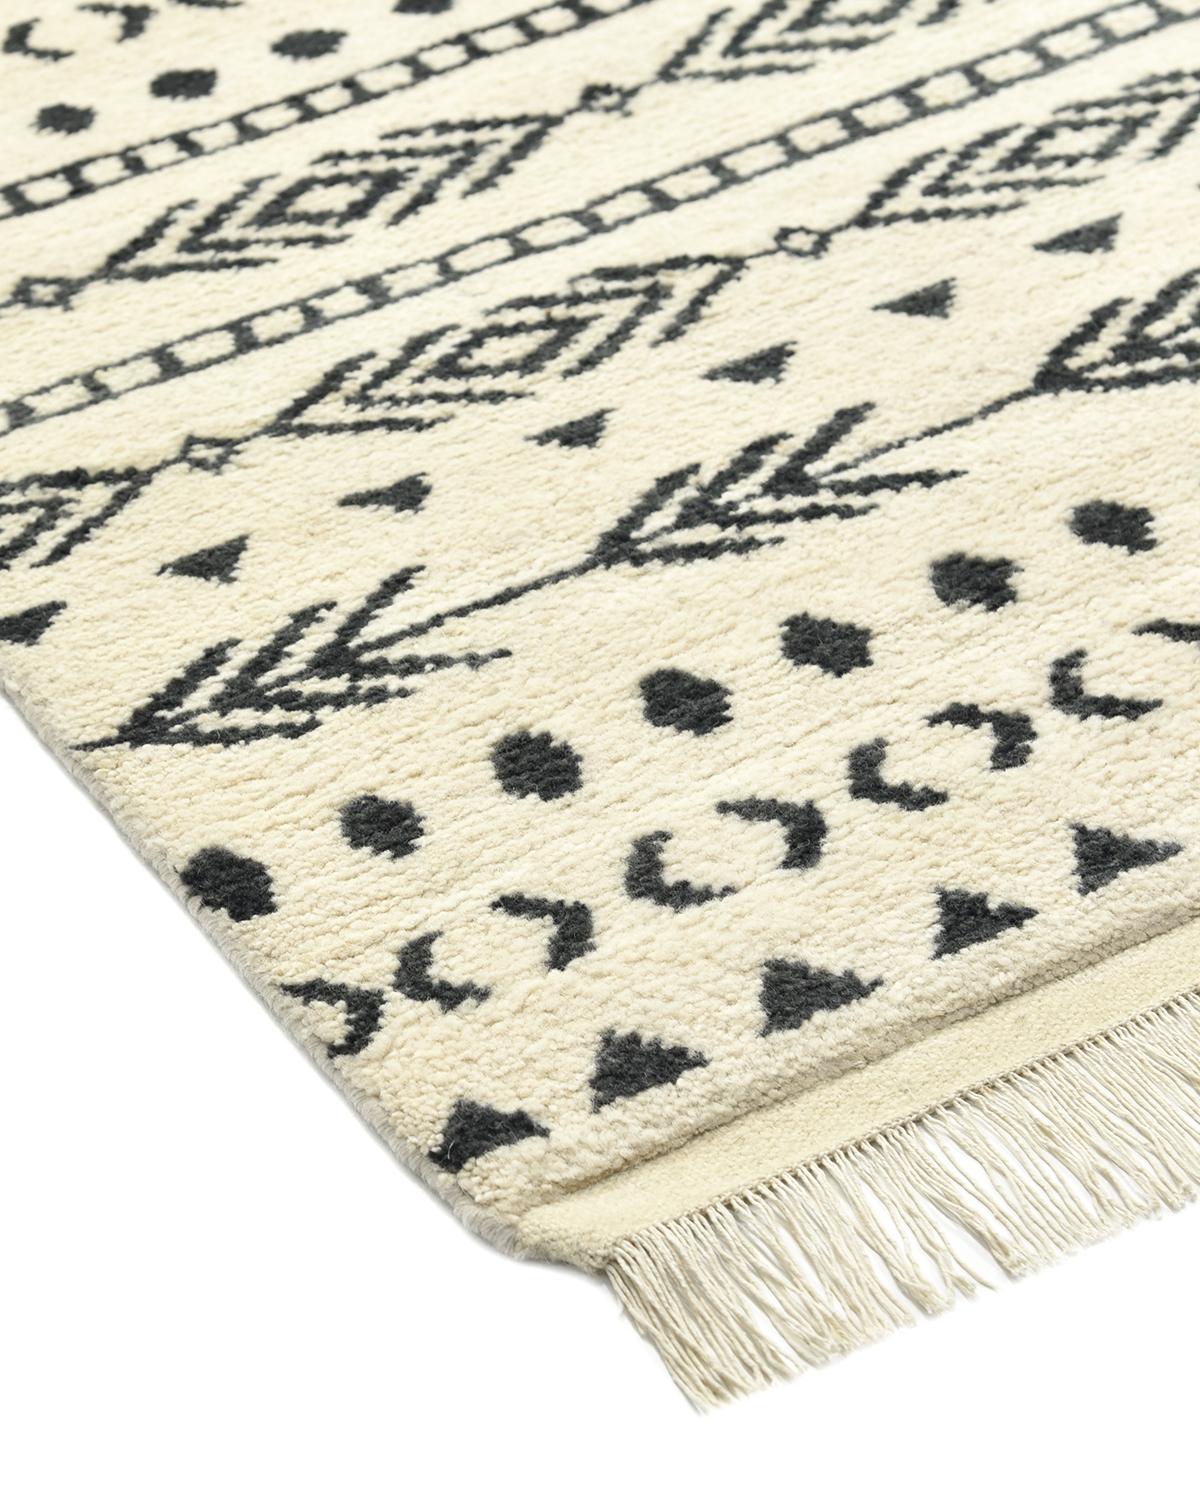 Bien que créés en Inde, ces tapis d'inspiration marocaine faits main rendent hommage à l'artisanat traditionnel et aux motifs séculaires. Cette collection donne un esprit vibrant à tout espace.